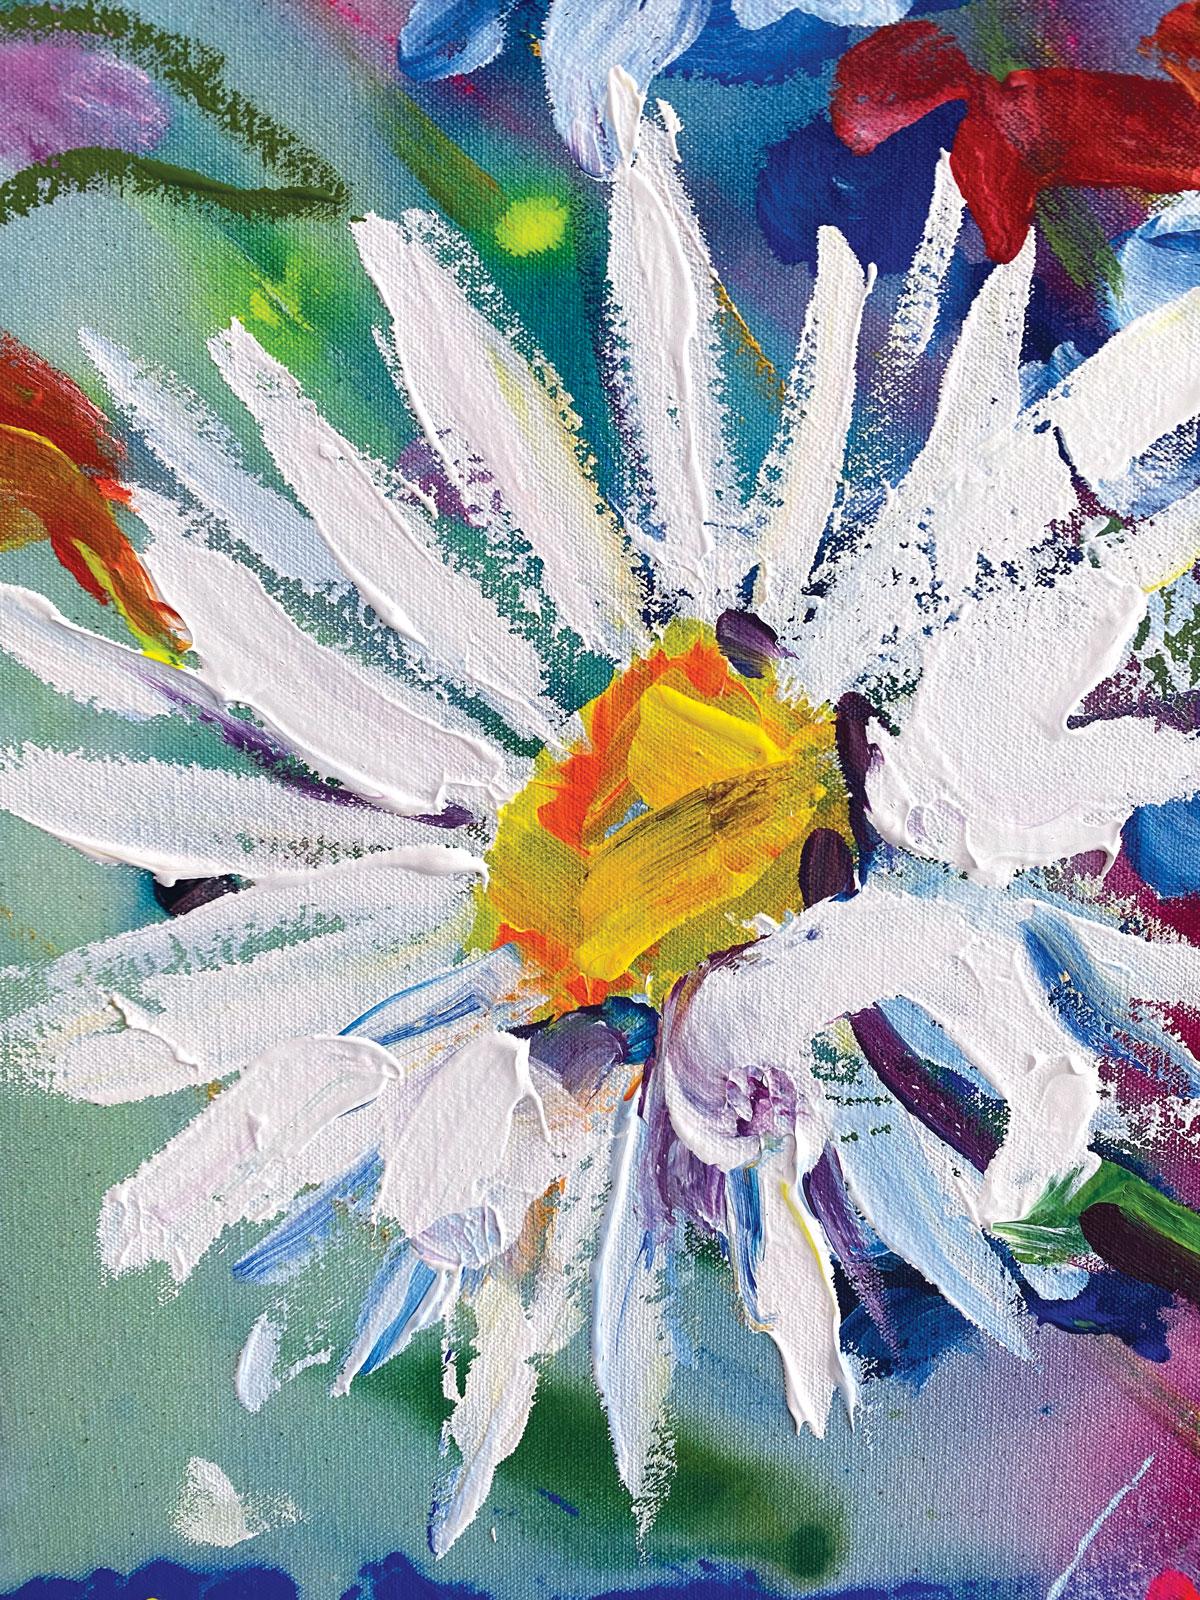 Un cadeau de l'été est une nature morte inspirée par les belles fleurs collectées dans le jardin de Rachaels pendant les jours d'été où elle passe de nombreuses heures dans son studio.

Les peintures de Rachael Dalzell sont colorées et expressives. 